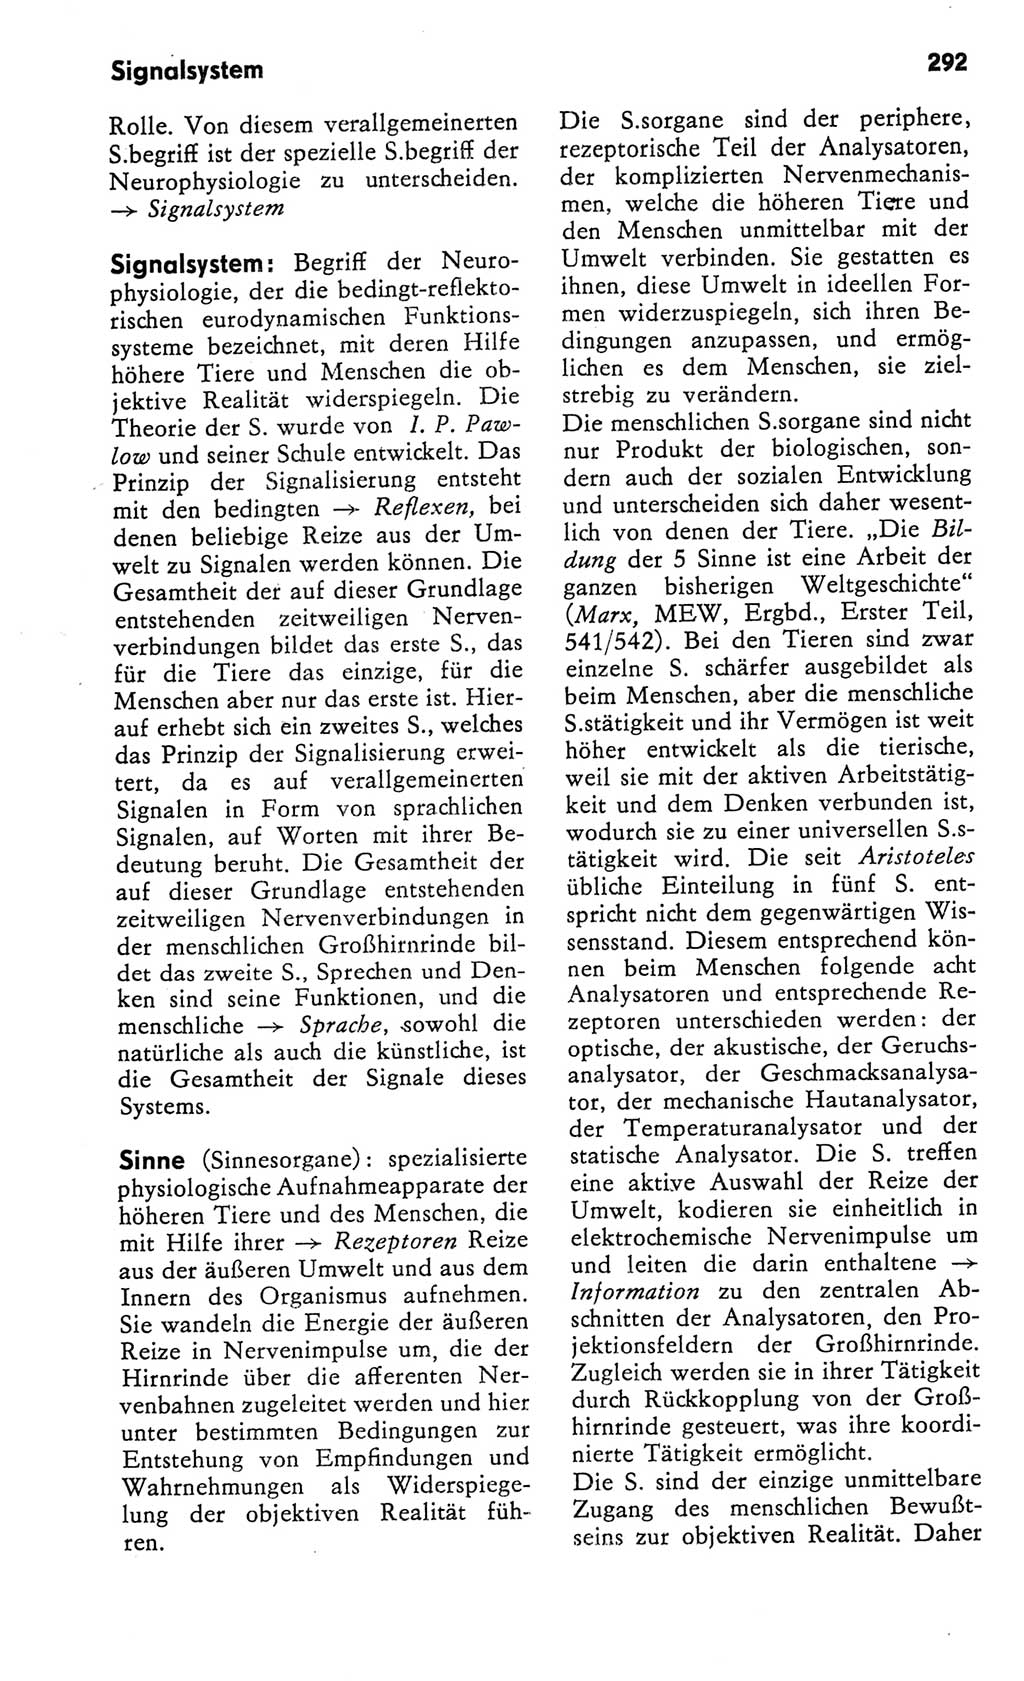 Kleines Wörterbuch der marxistisch-leninistischen Philosophie [Deutsche Demokratische Republik (DDR)] 1982, Seite 292 (Kl. Wb. ML Phil. DDR 1982, S. 292)